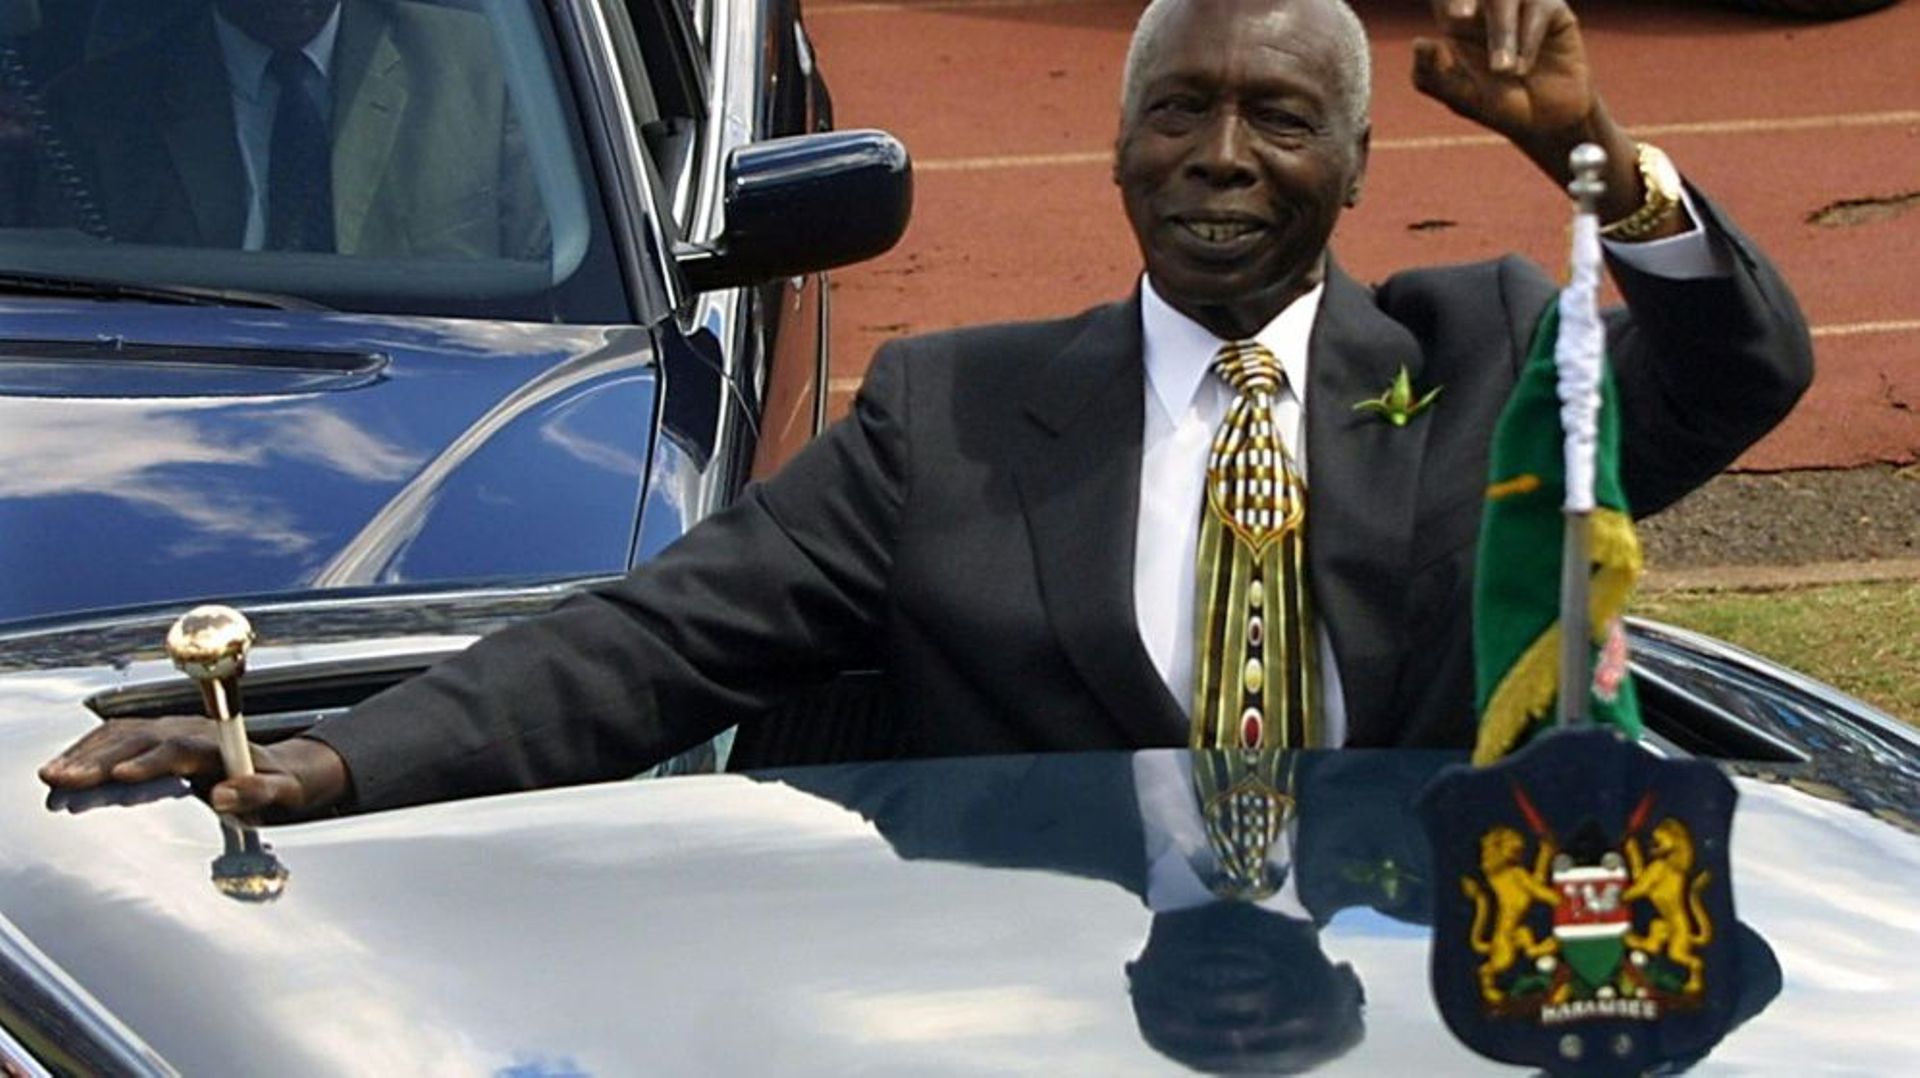 L'ancien président kényan Daniel Arap Moi, le 12 décembre 2002 à Nairobi